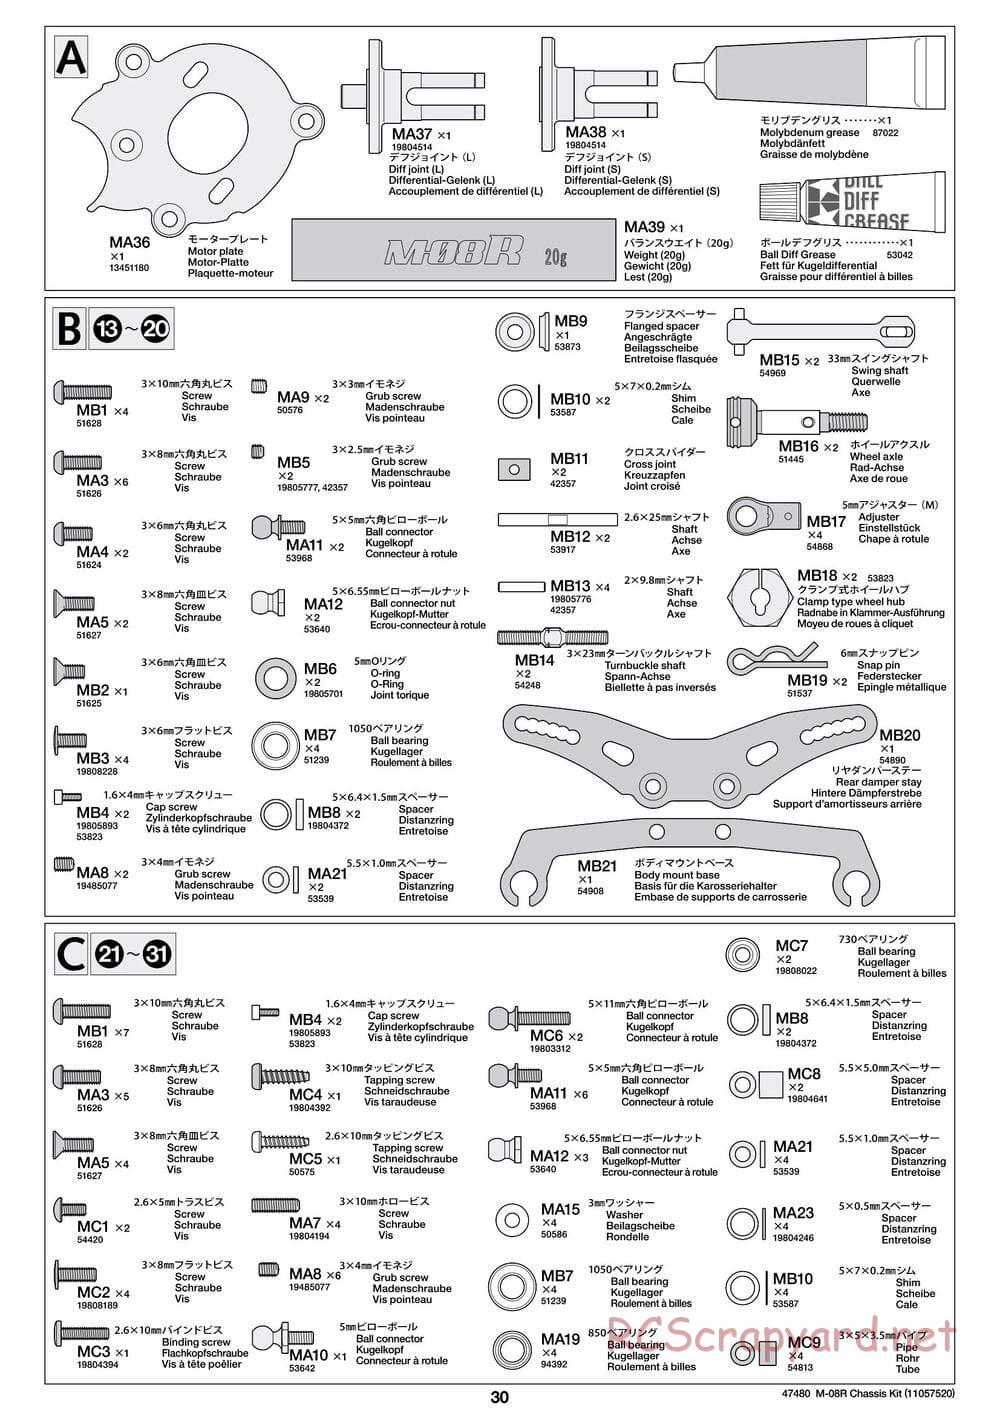 Tamiya - M-08R Chassis - Manual - Page 30